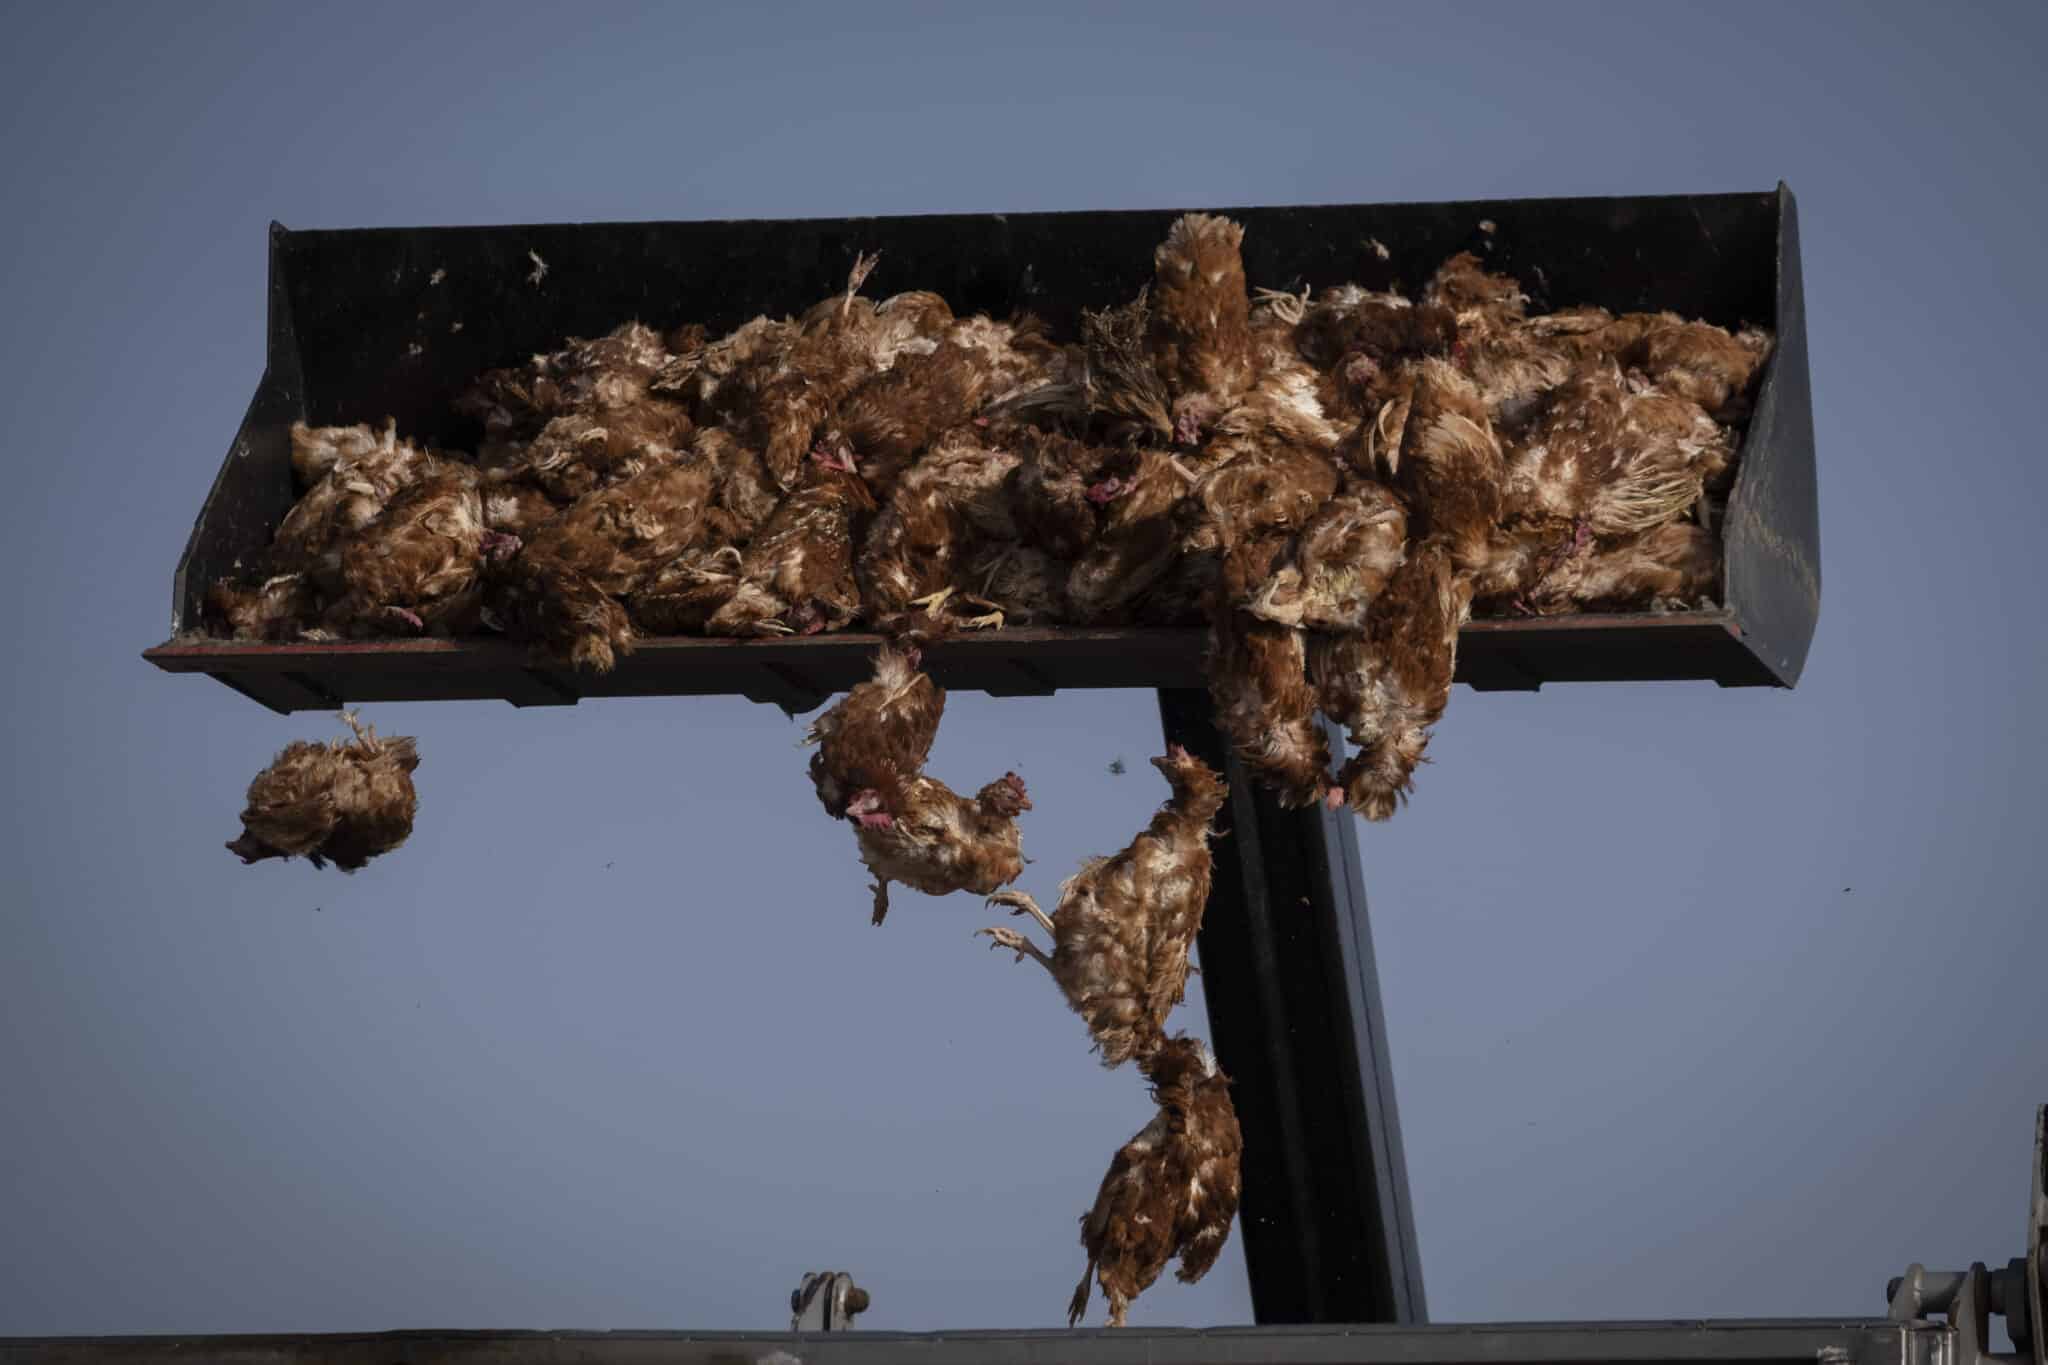 La gripe aviar sacude las granjas de gallinas de Valladolid antes del cierre de campaña